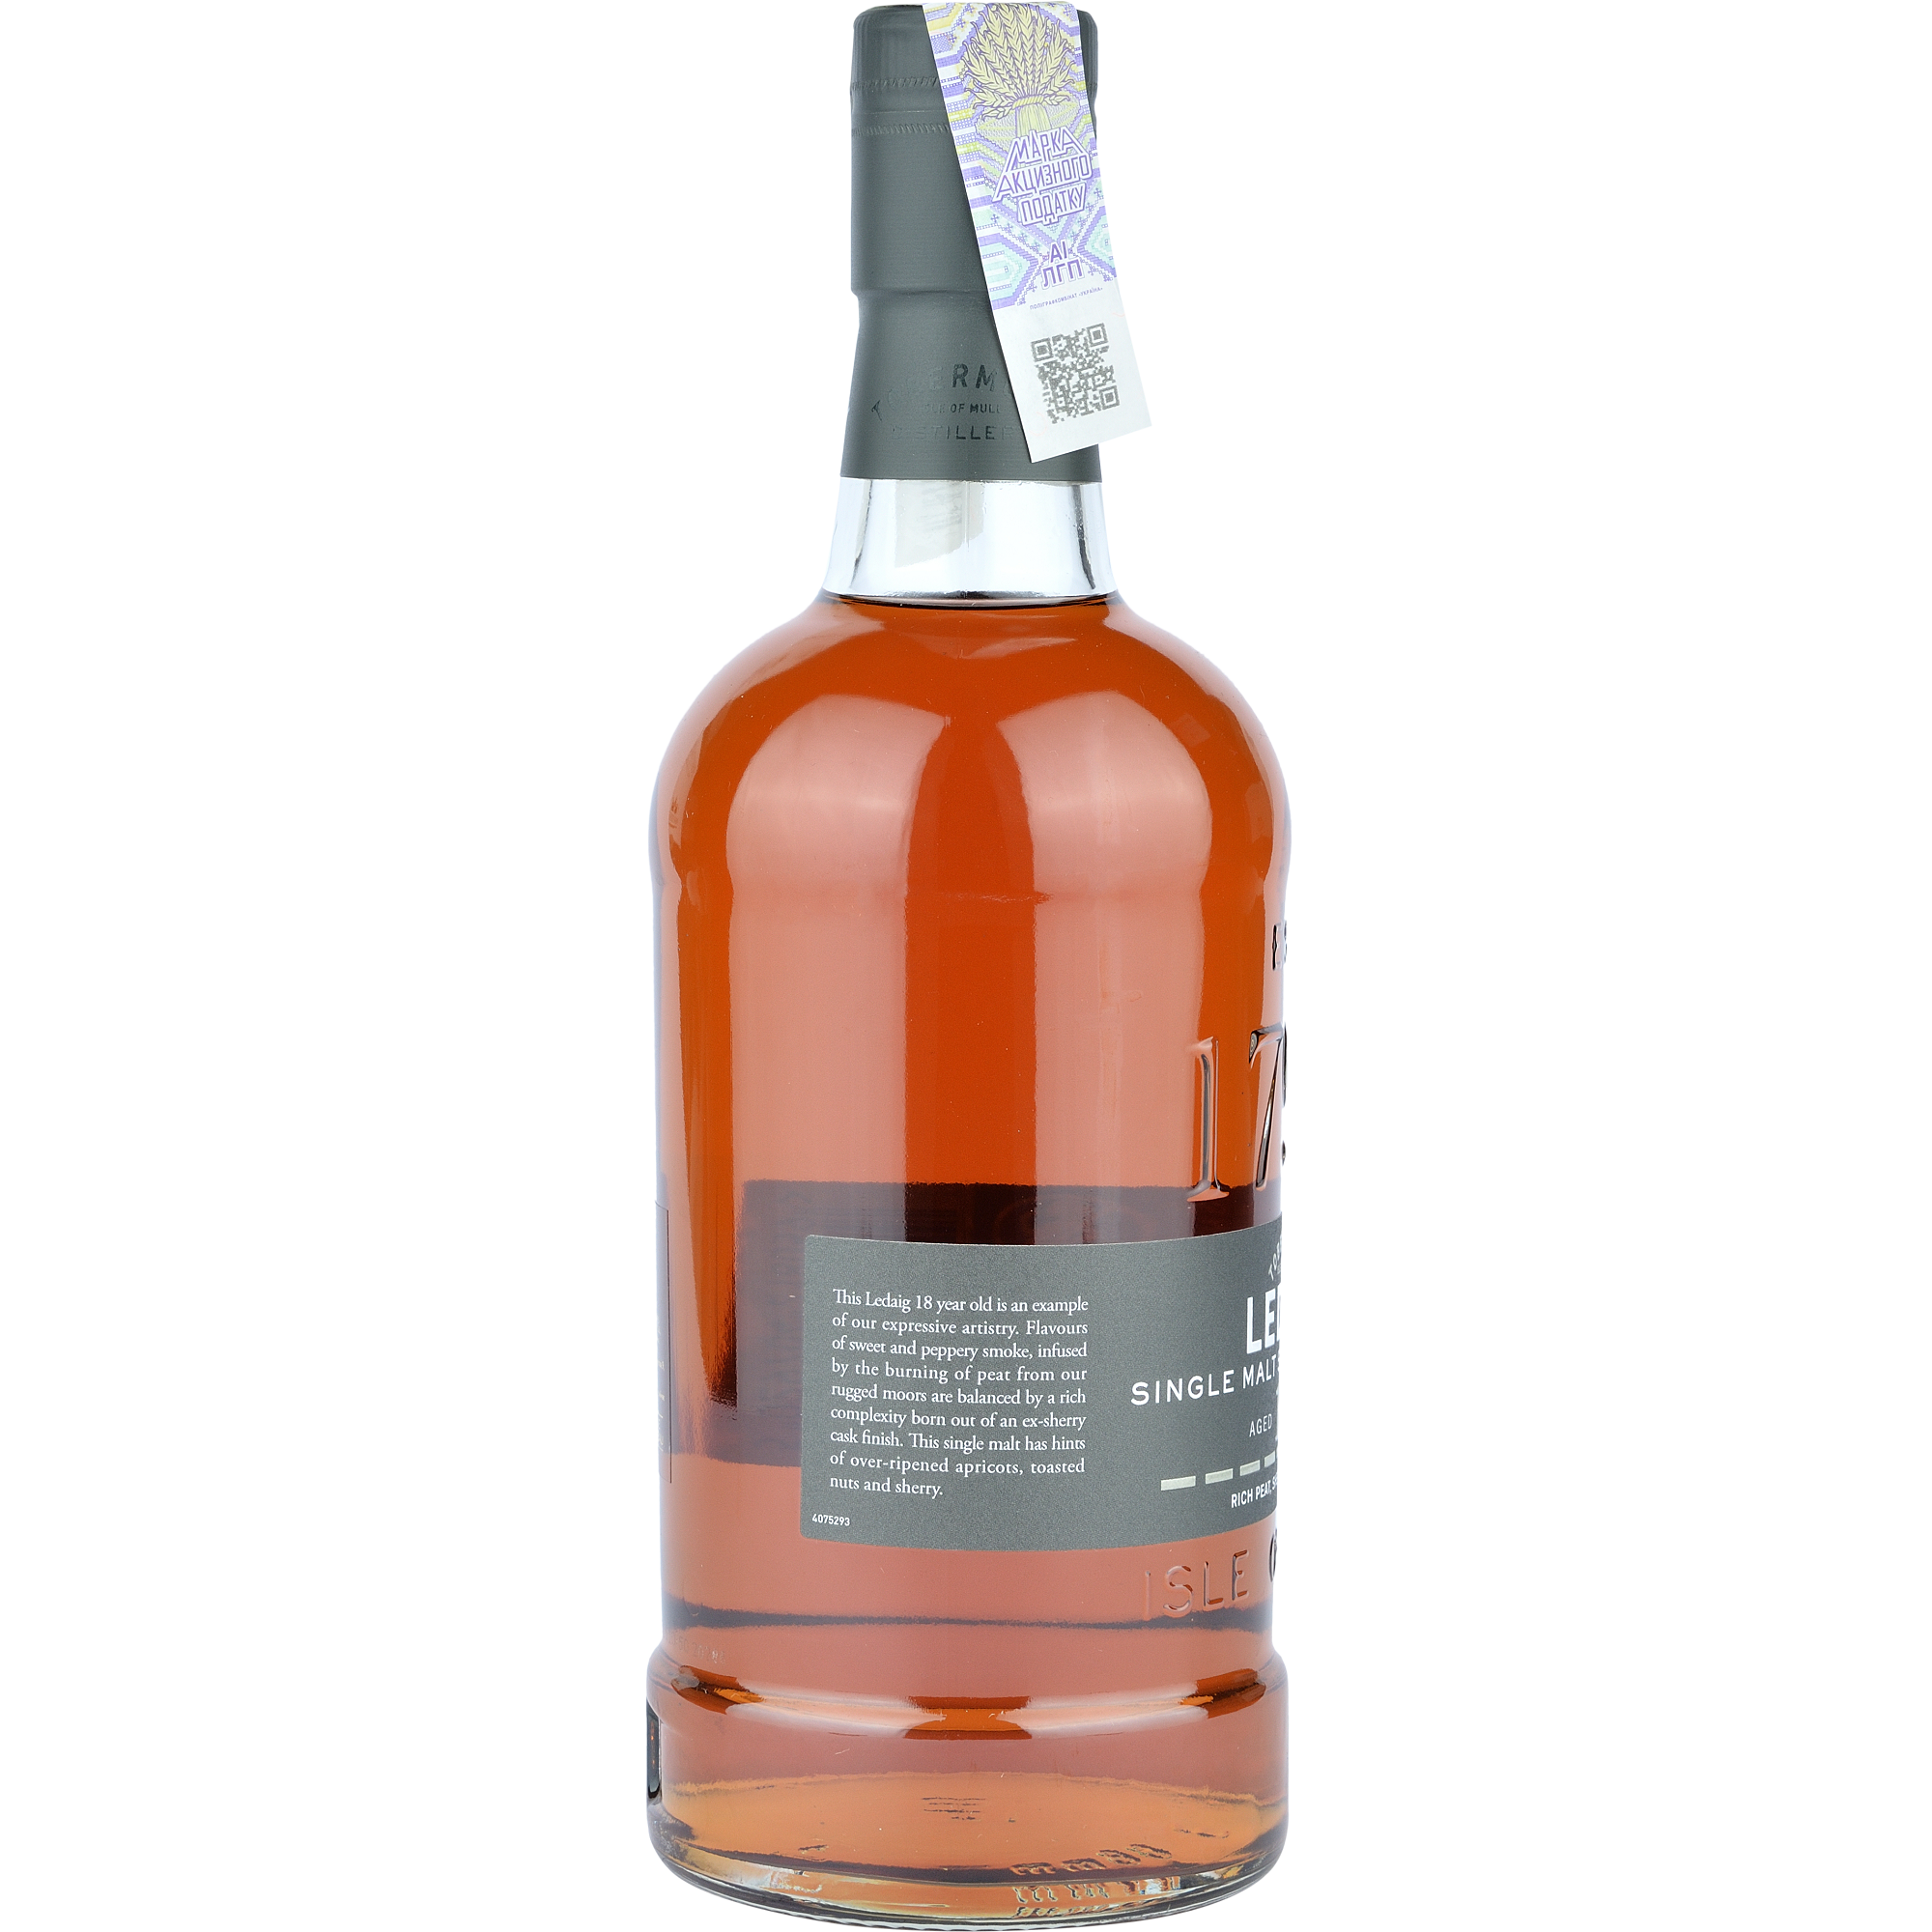 Виски Ledaig Single Malt Scotch Whisky 18 yo, в подарочной упаковке, 46,3%, 0,7 л - фото 2